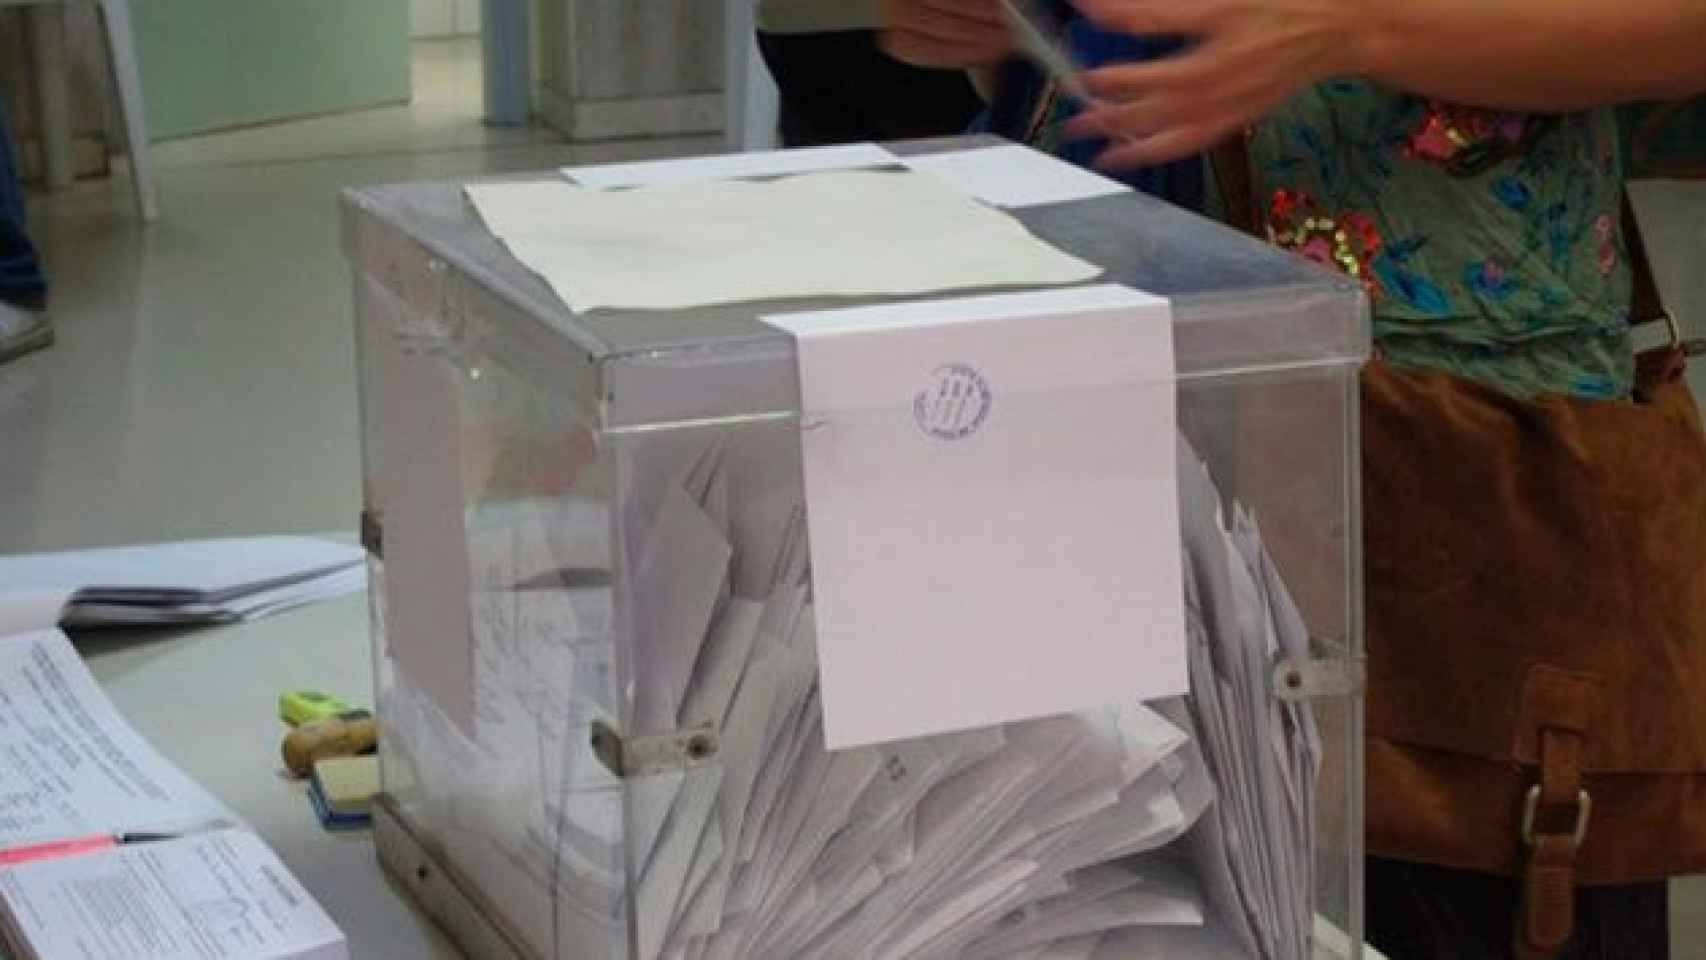 La Generalitat saca a concurso material para unas elecciones al Parlamento catalán